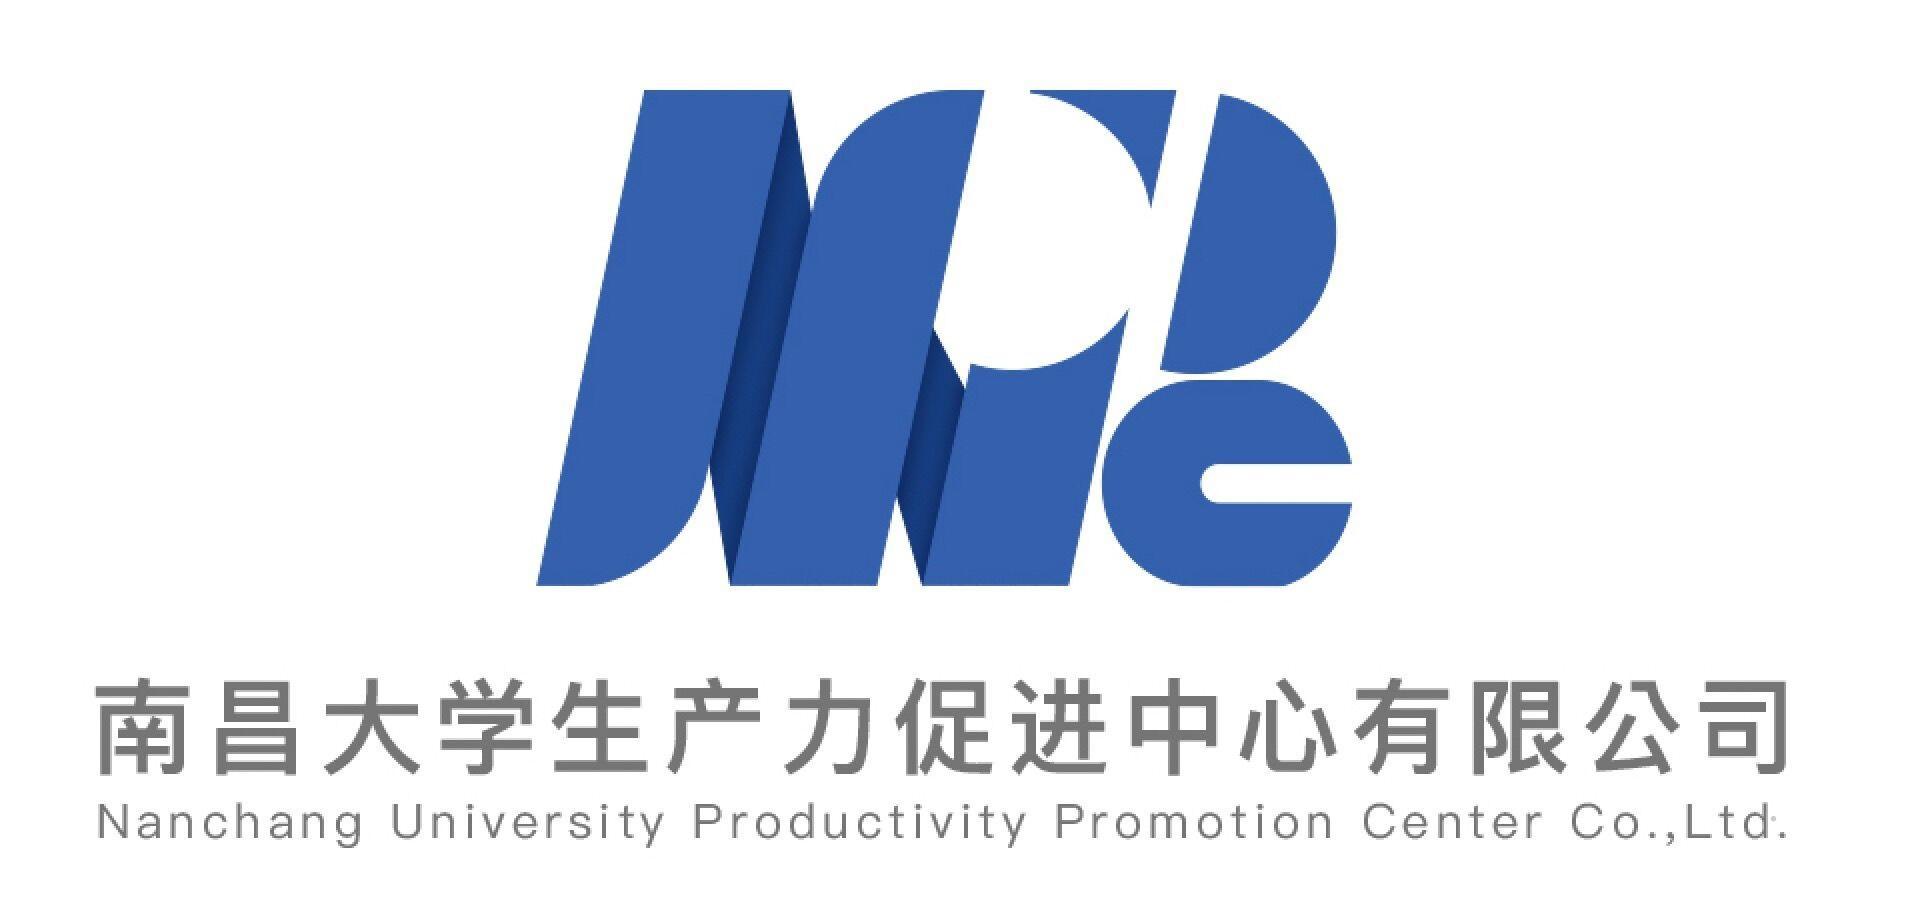 南昌大学生产力促进中心有限公司 NANCHANG UNIVERSITY PRODUCTIVITY PROMOTION CENTER CO.,LTD